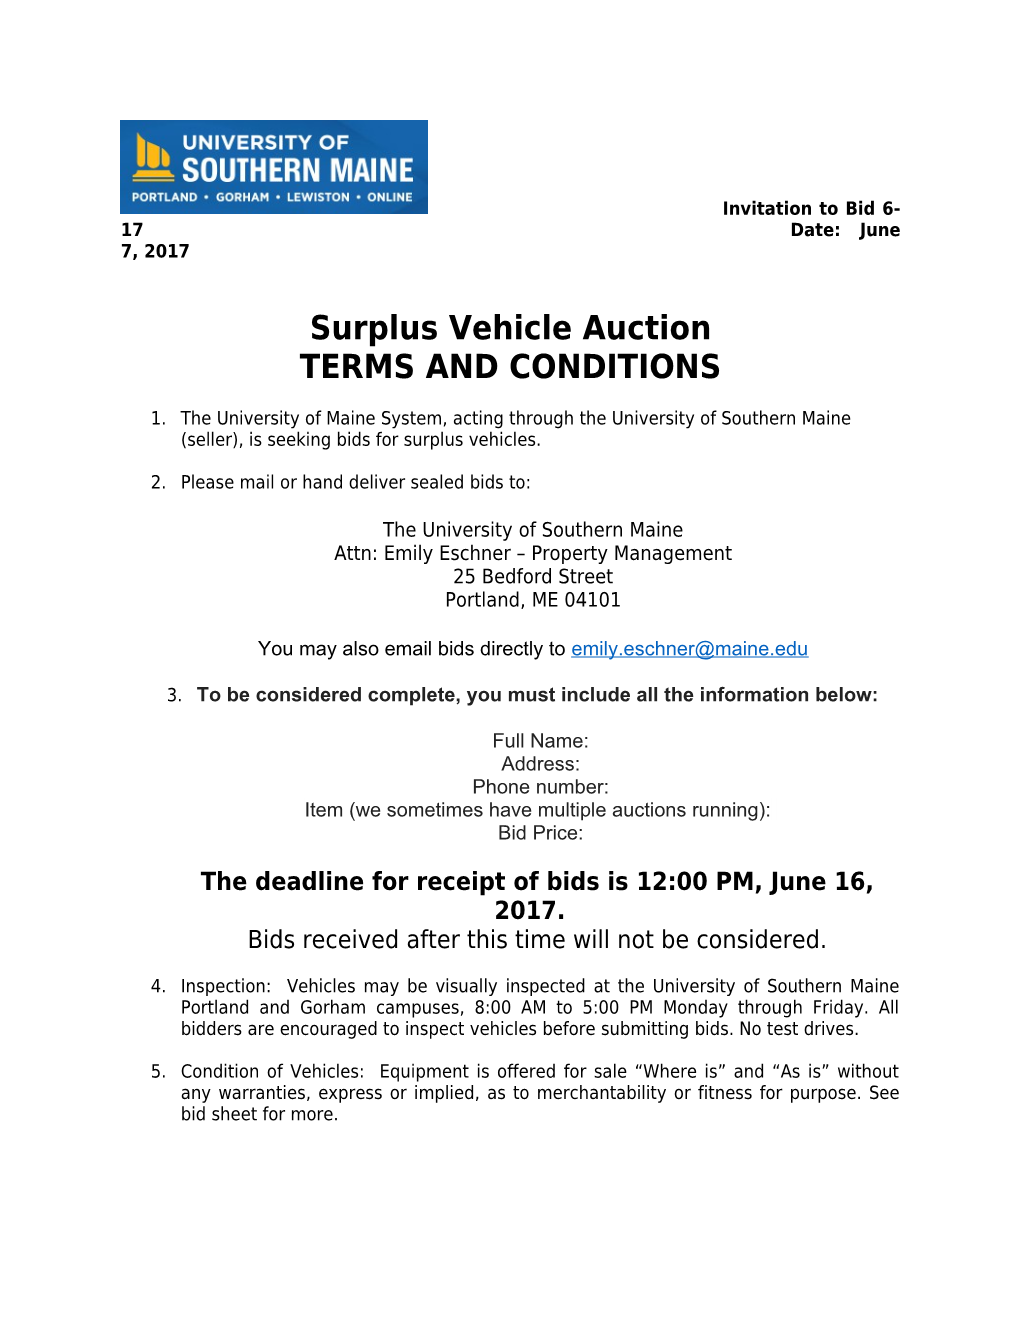 Surplus Vehicle Auction